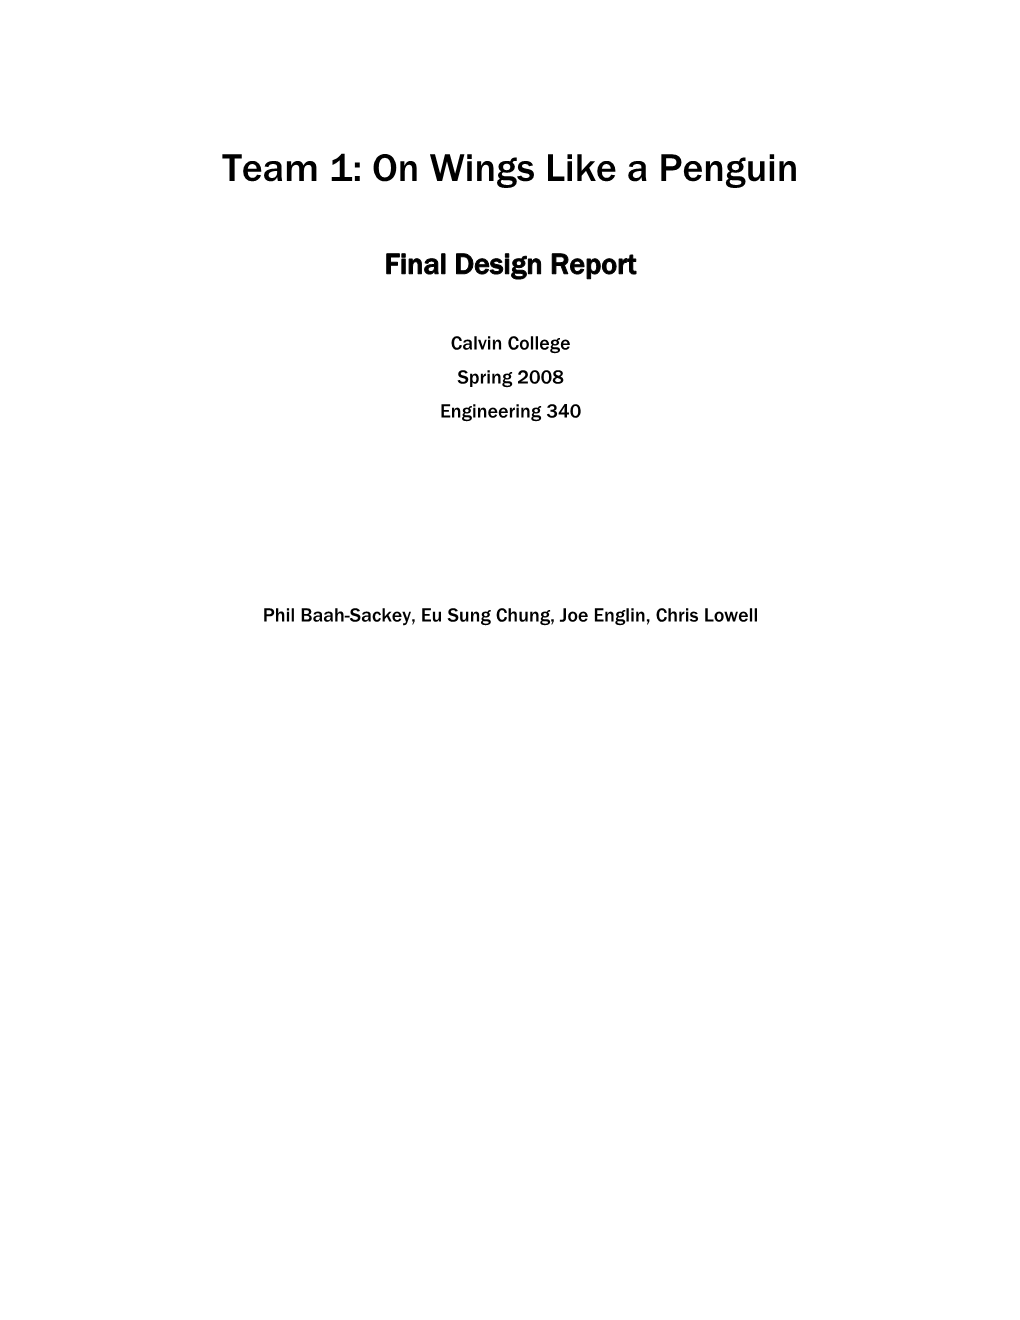 Team 1: on Wings Like a Penguin